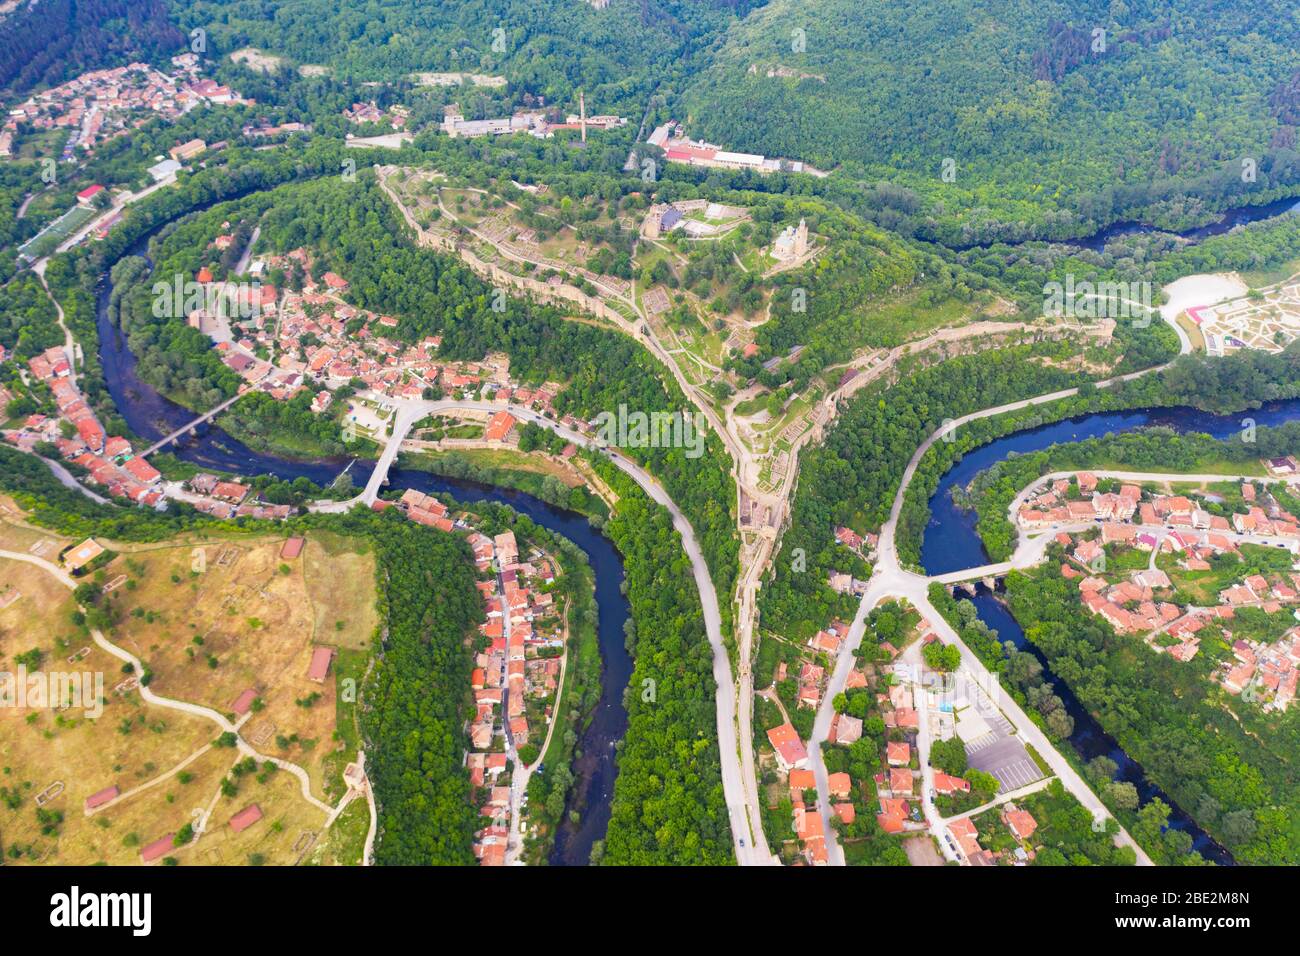 Europe, Bulgarie, Veliko Tarnovo, vue aérienne de la forteresse de Tsarevets Banque D'Images